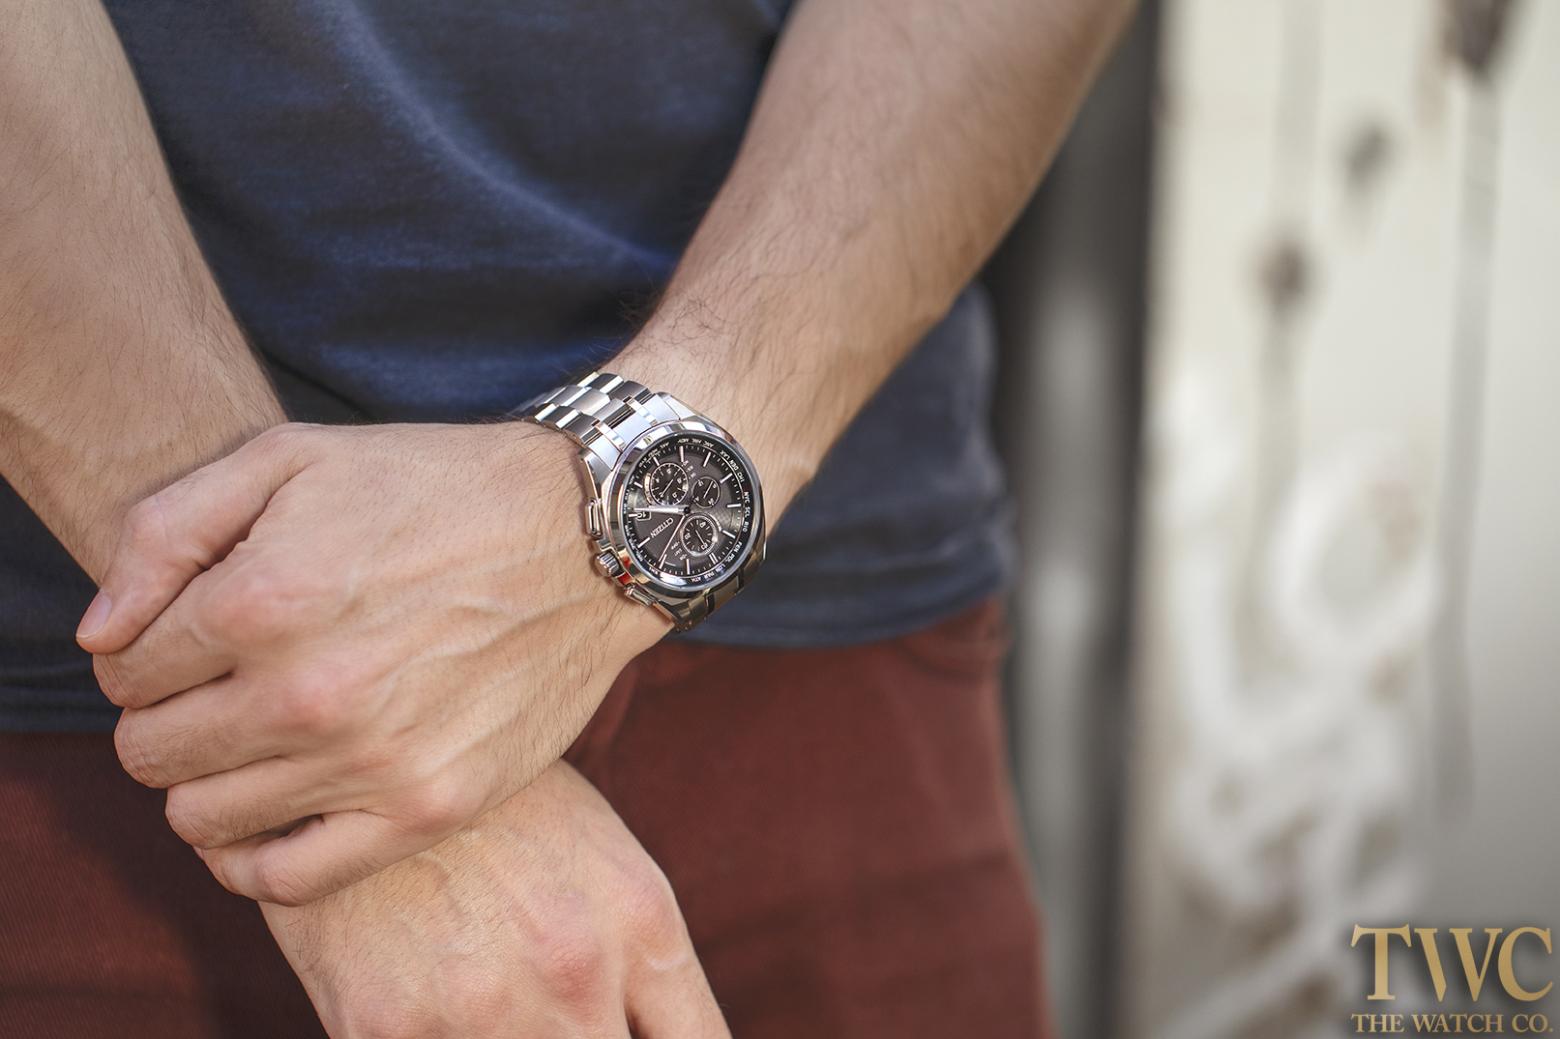 クロノグラフ メンズのオススメ5モデルに注目 人気の男性ブランドが発売しているメンズ腕時計とは The Watch Company